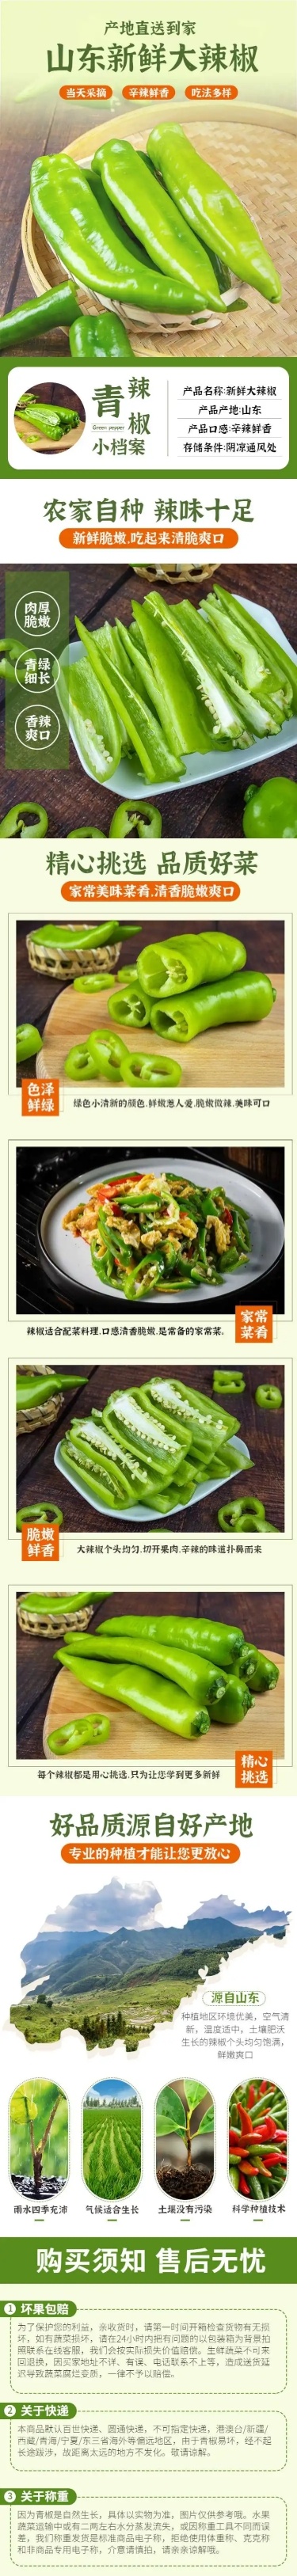 食品生鲜蔬菜青椒详情页